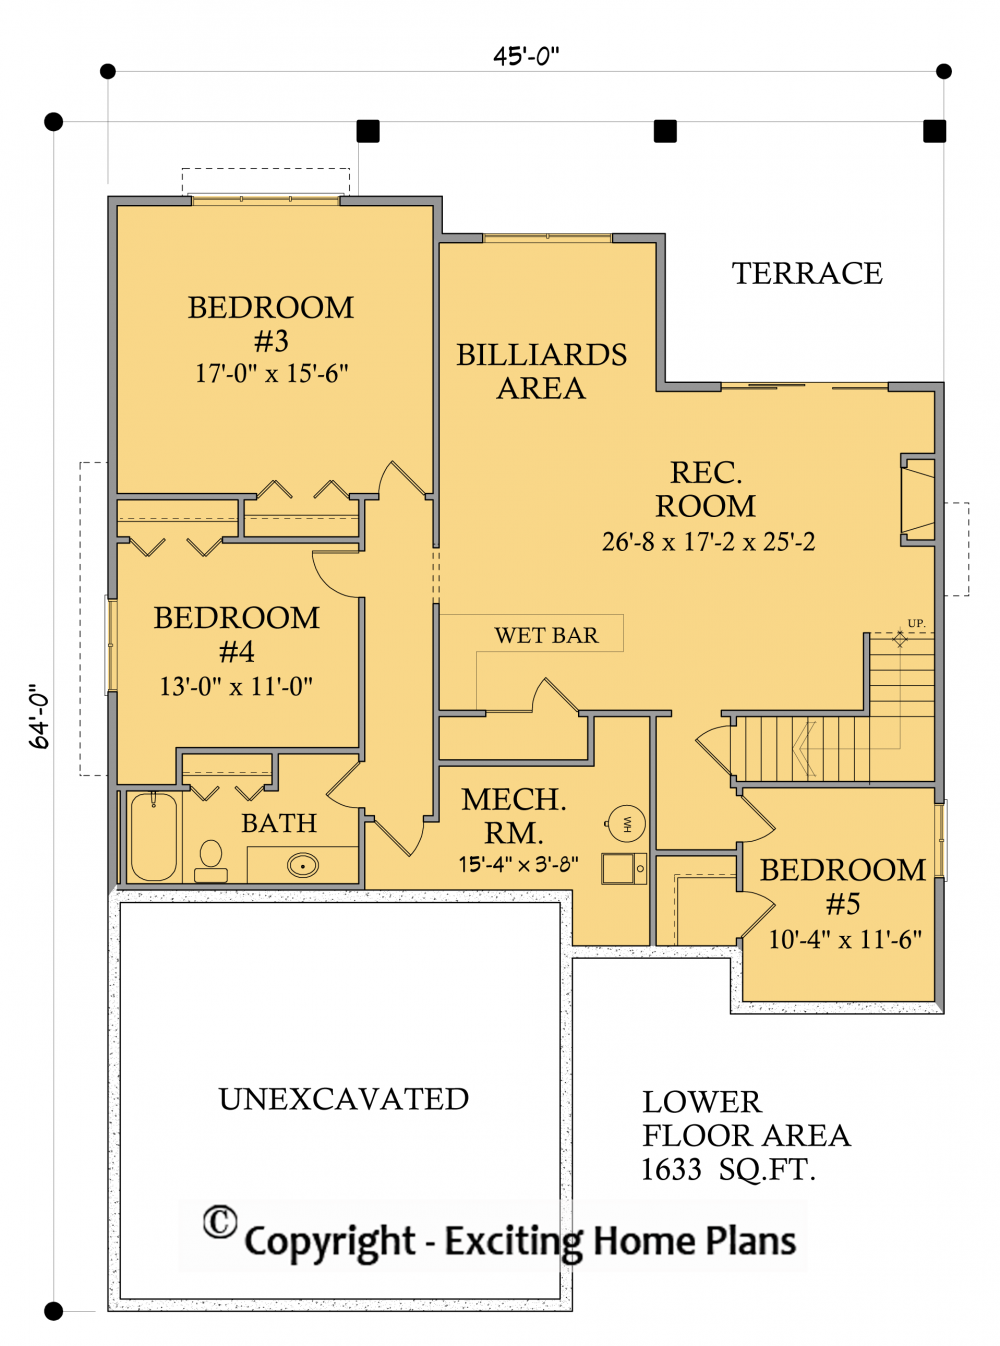 House Plan E1002-10 Lower Floor Plan